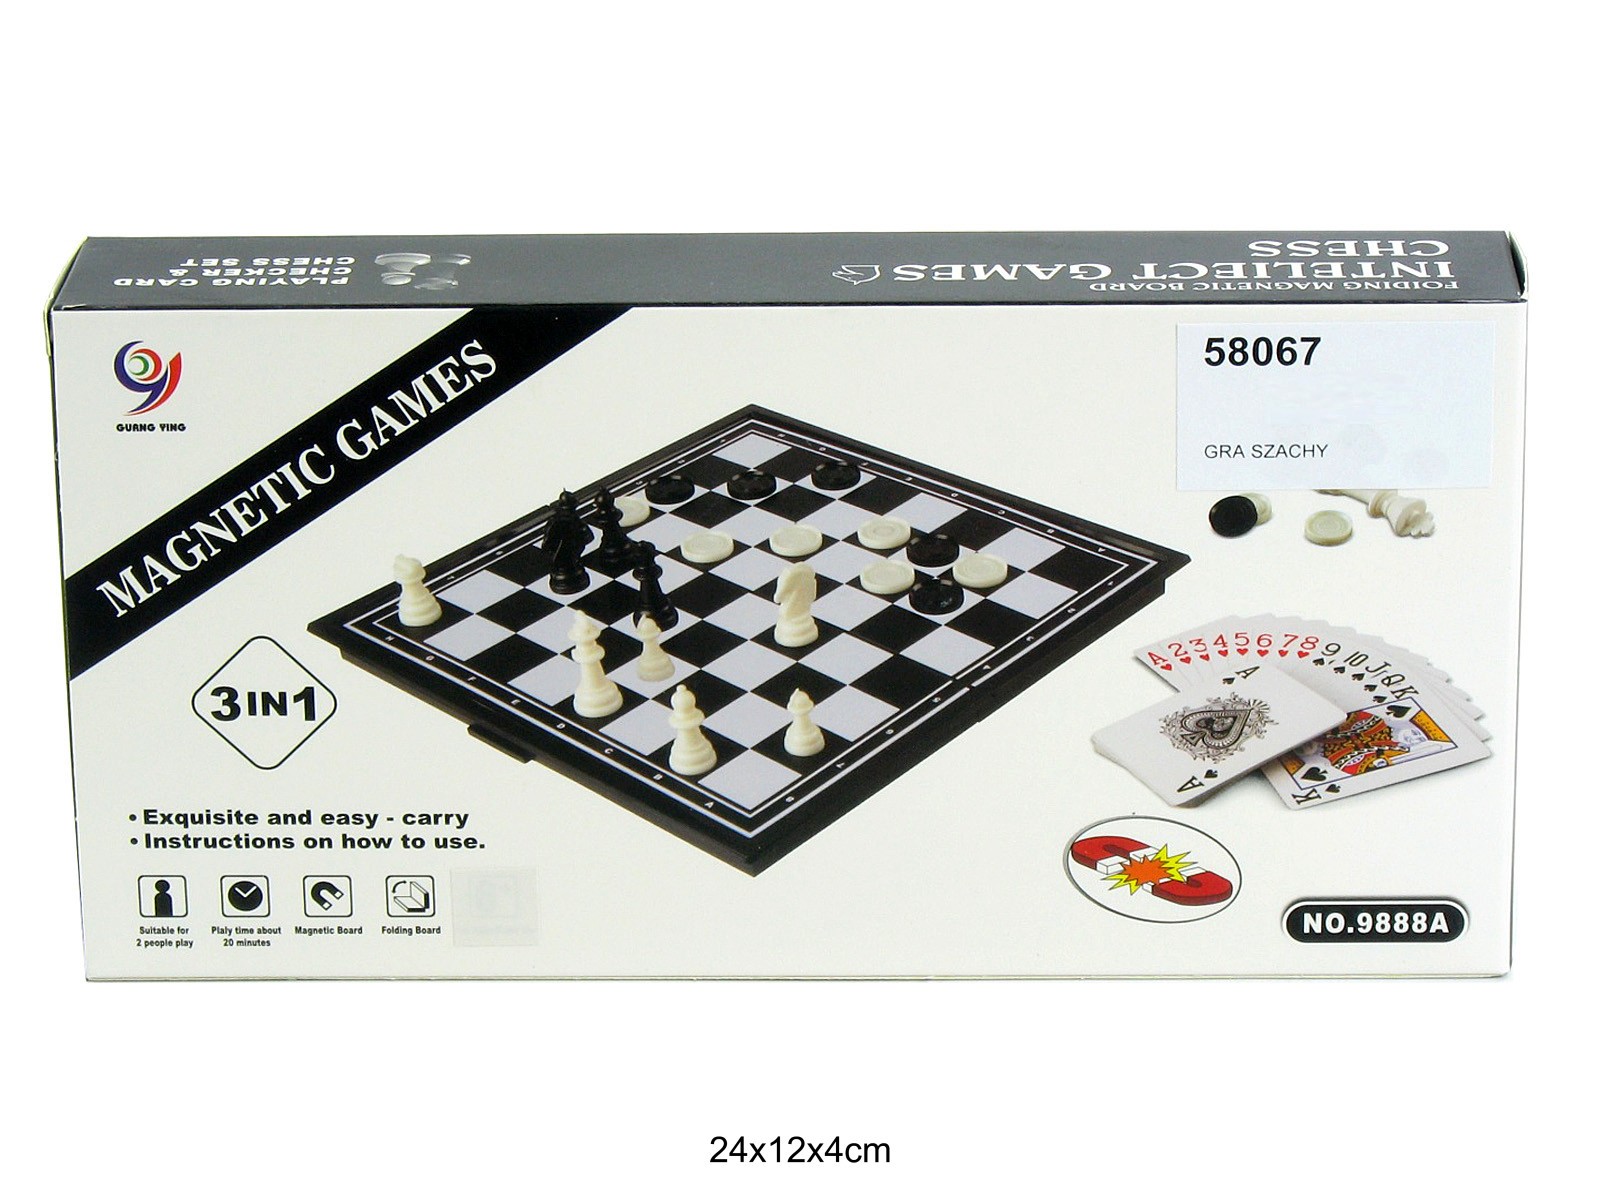 Galda spēle Dambrete, šahs un kārtis